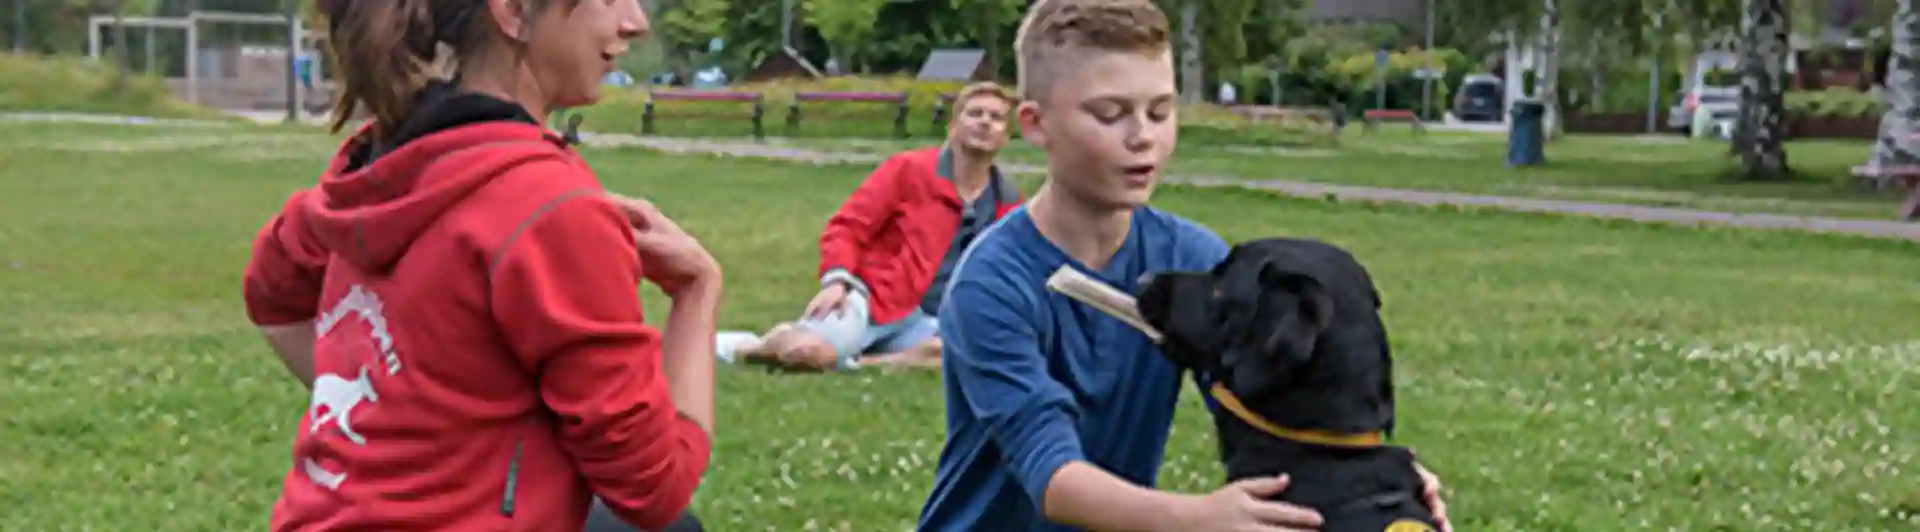 En assistanshundinstruktör instruerar en elev med hans assistanshund.